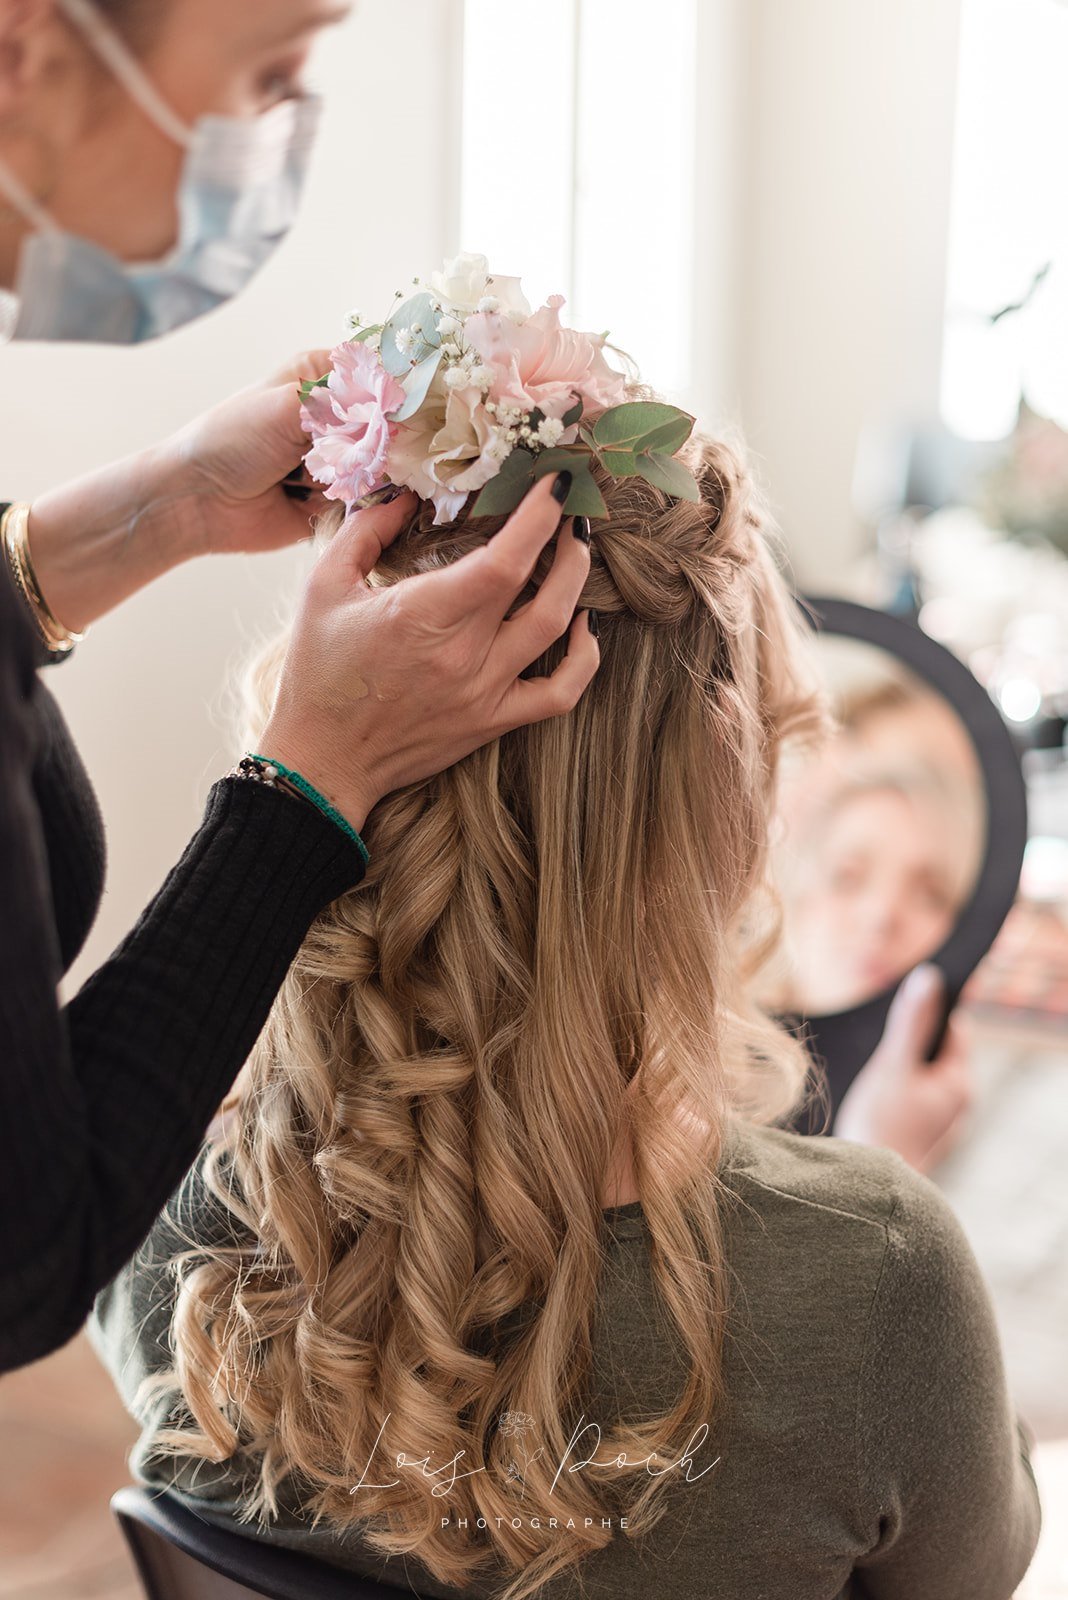 Anais Faure en train de coiffer une mariée à Montpellier